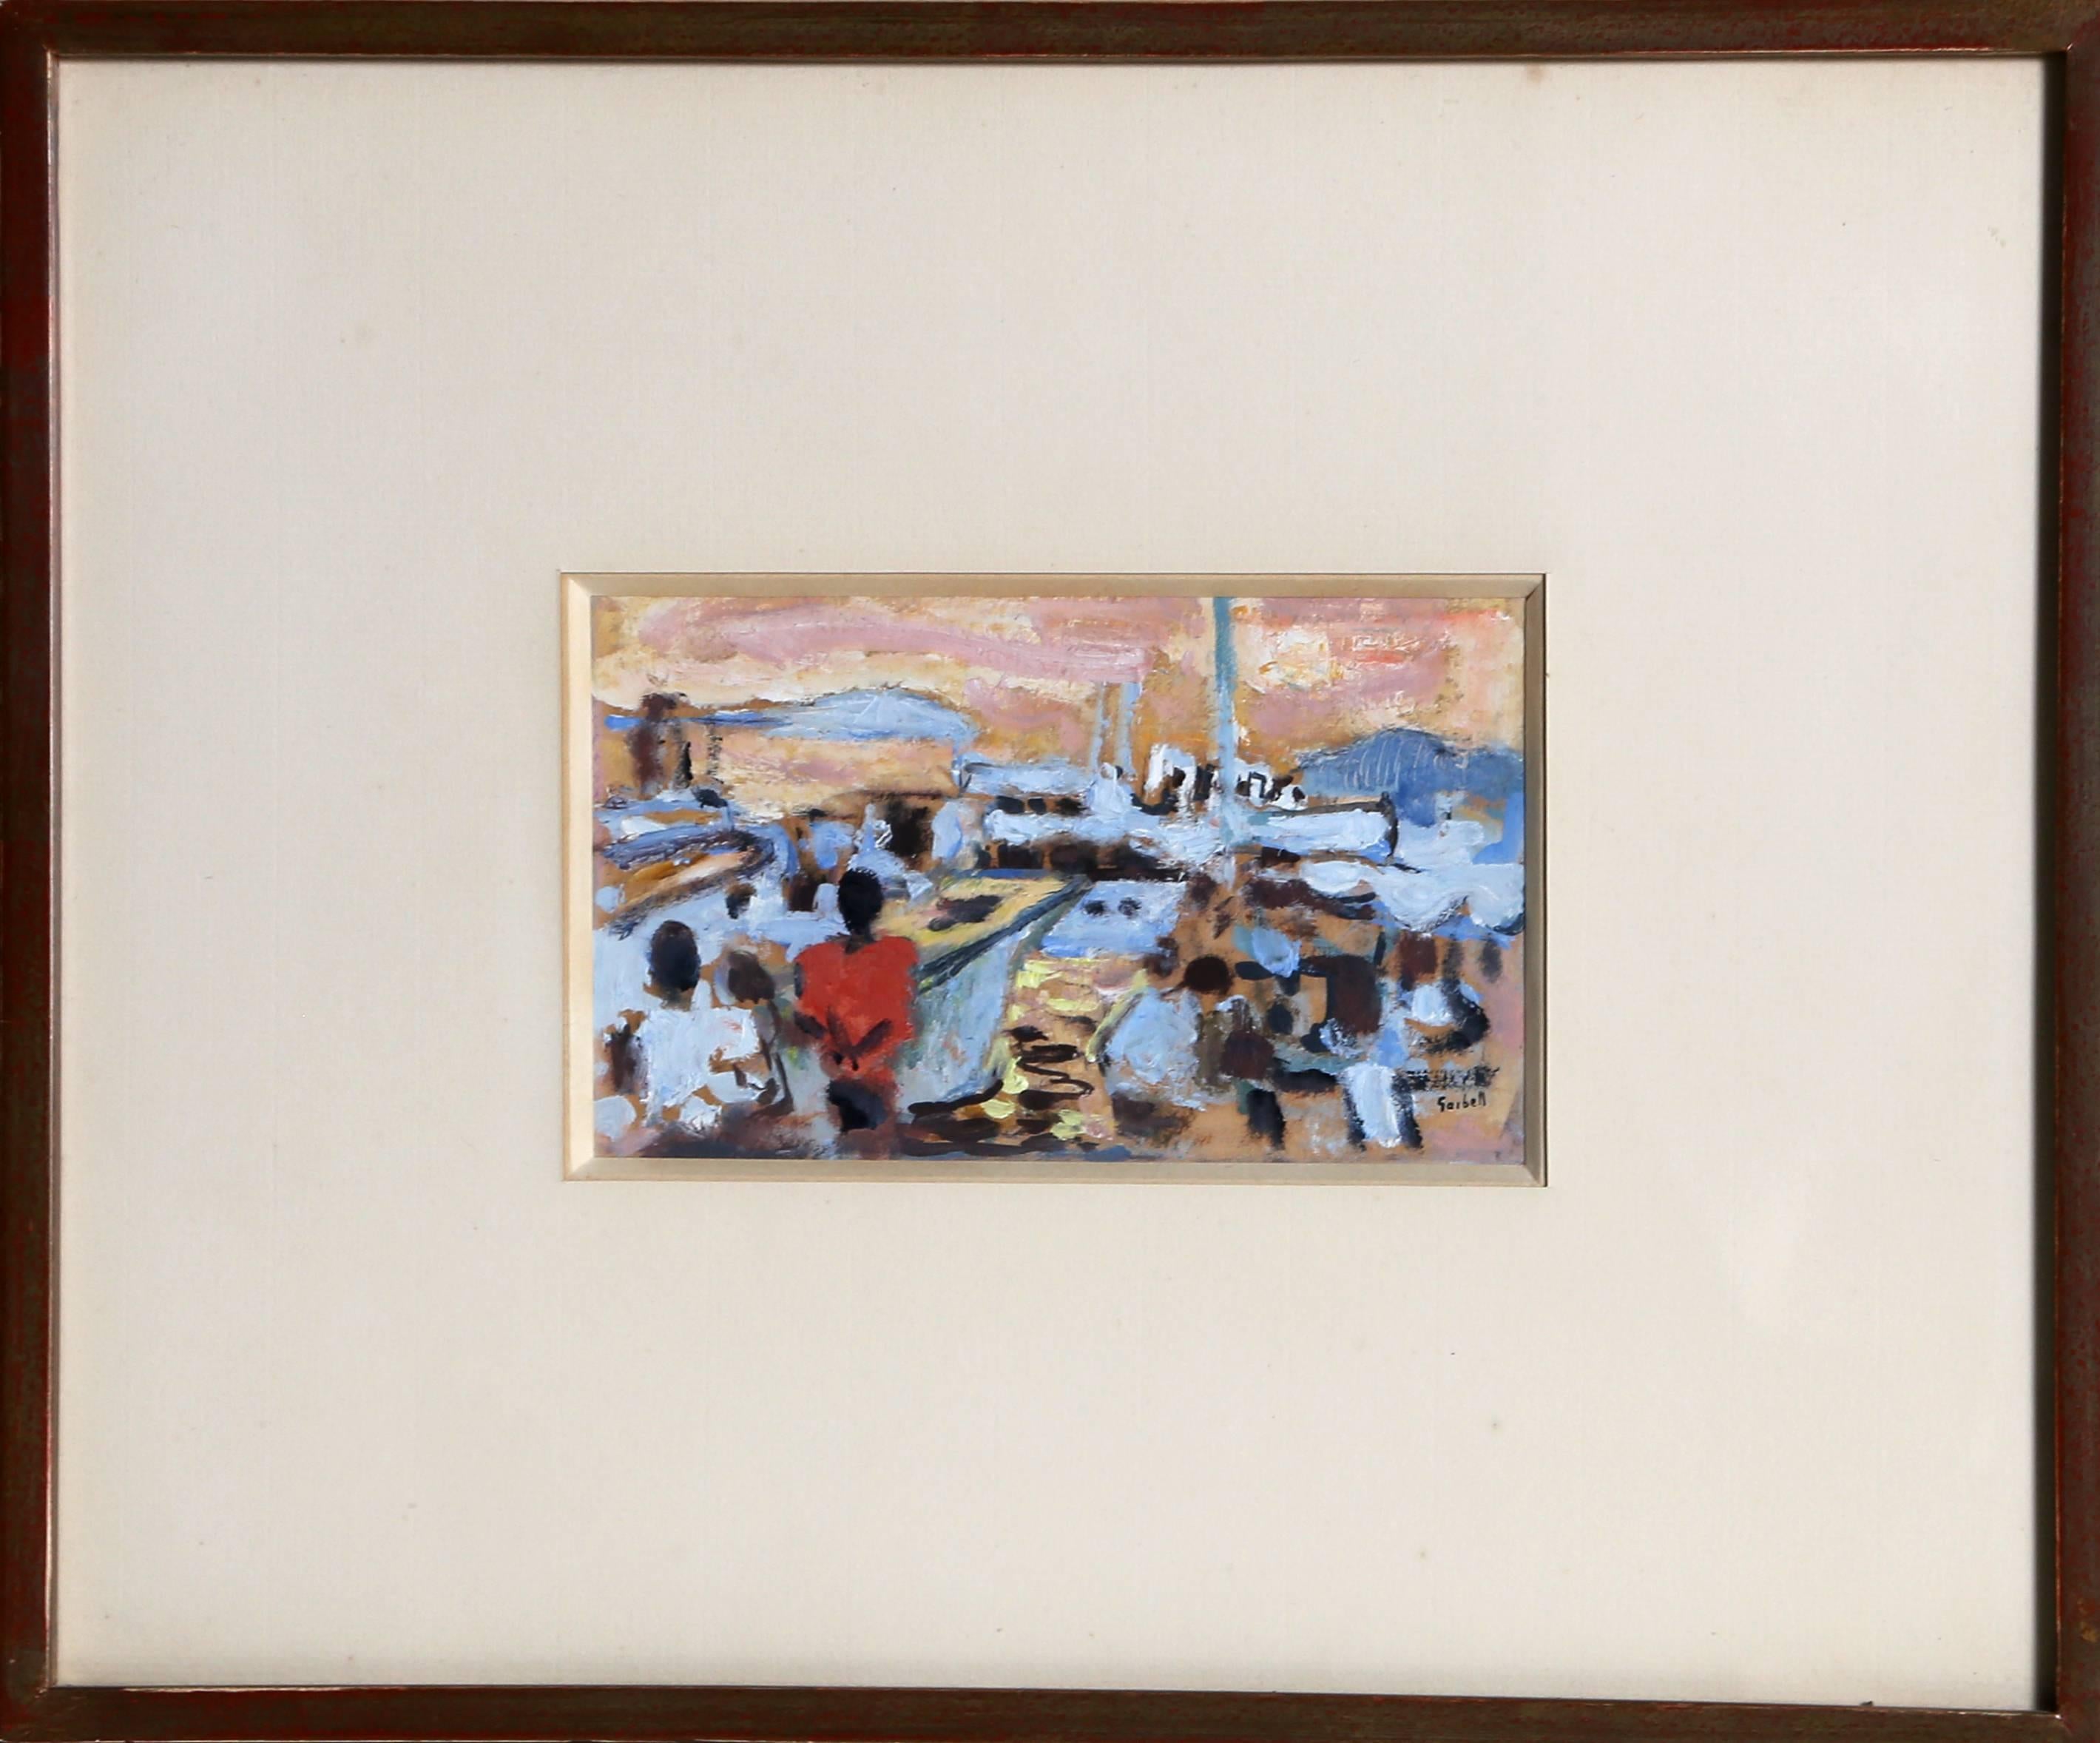 Künstler: Alexandre Sacha Garbell, Franzose (1903 - 1970)
Titel: St. Maxime
Jahr: ca. 1958
Medium: Gouache auf Papier, signiert 
Bildgröße: 4 x 7 Zoll
Rahmengröße: 12,5 x 15,25 Zoll